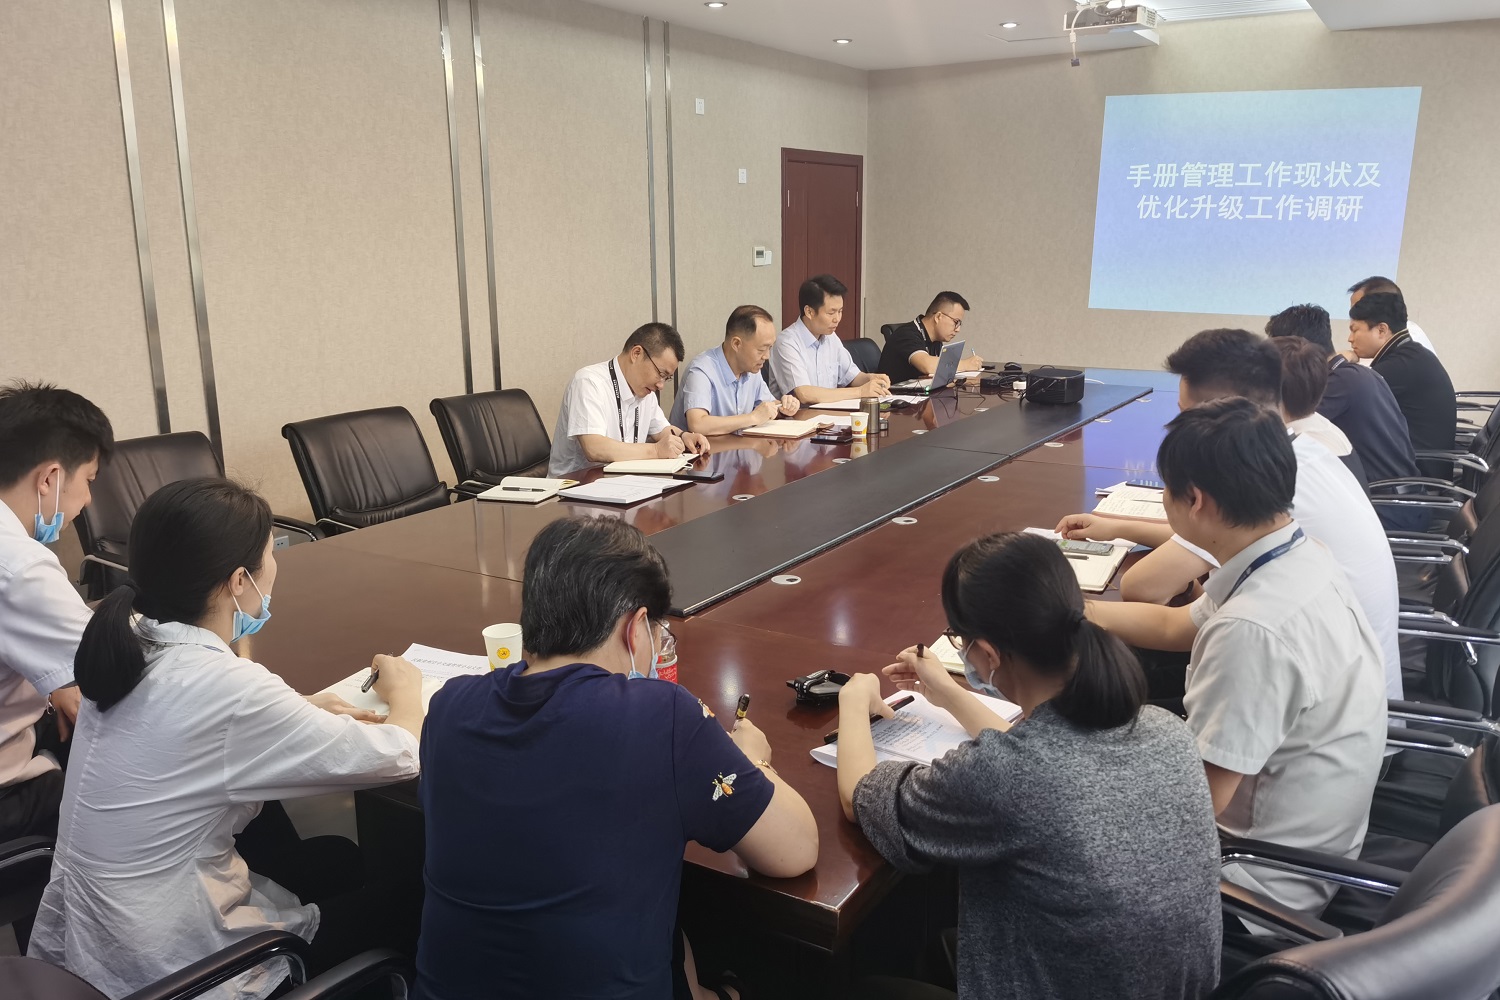 贵州空管分局张志东副局长组织开展基层调查研究工作